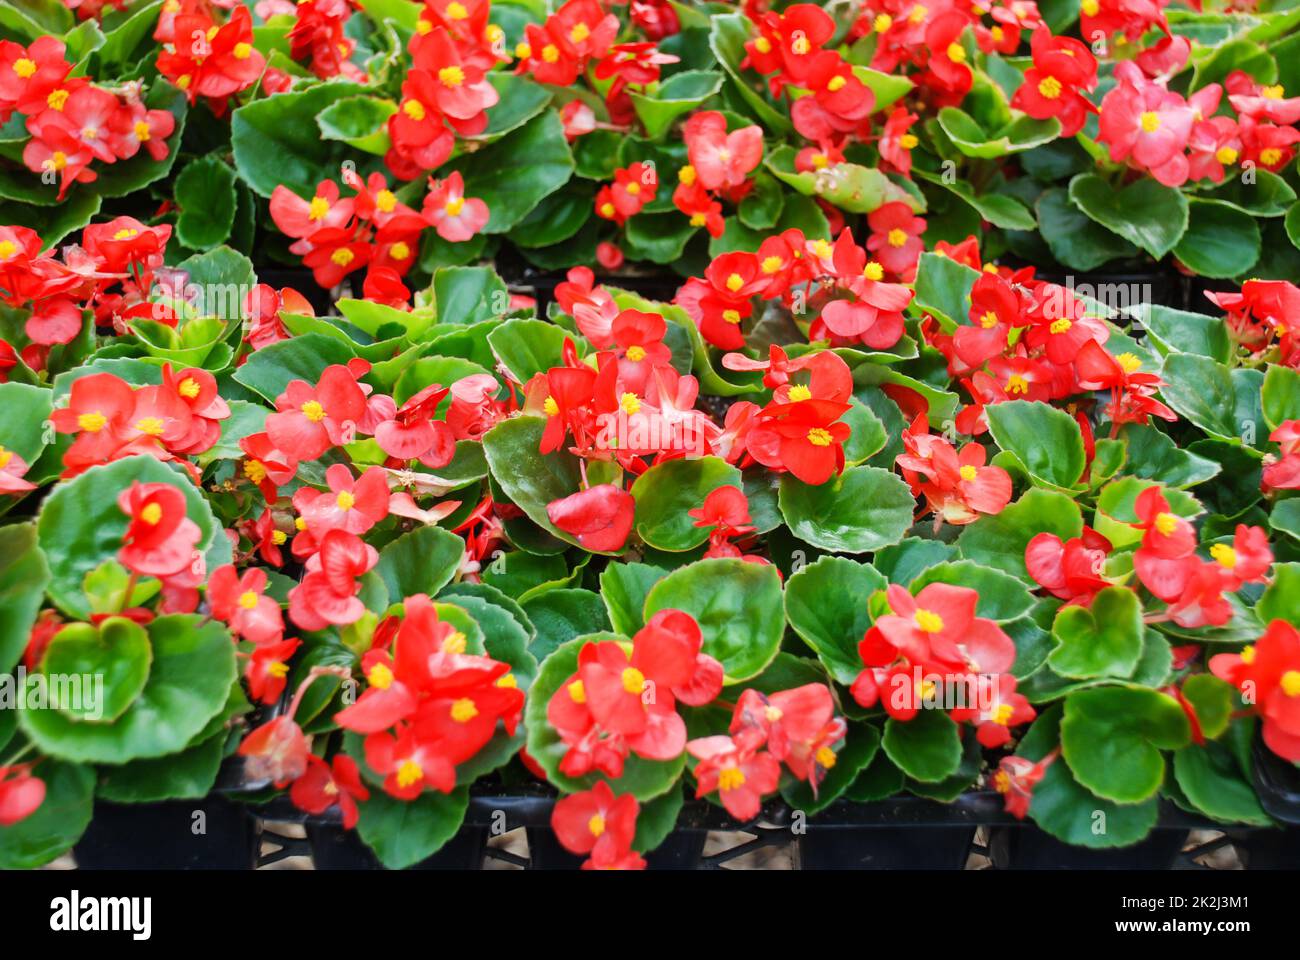 Begonias, semperflorens begonias, dans le jardin, begonia en pot rouge Banque D'Images